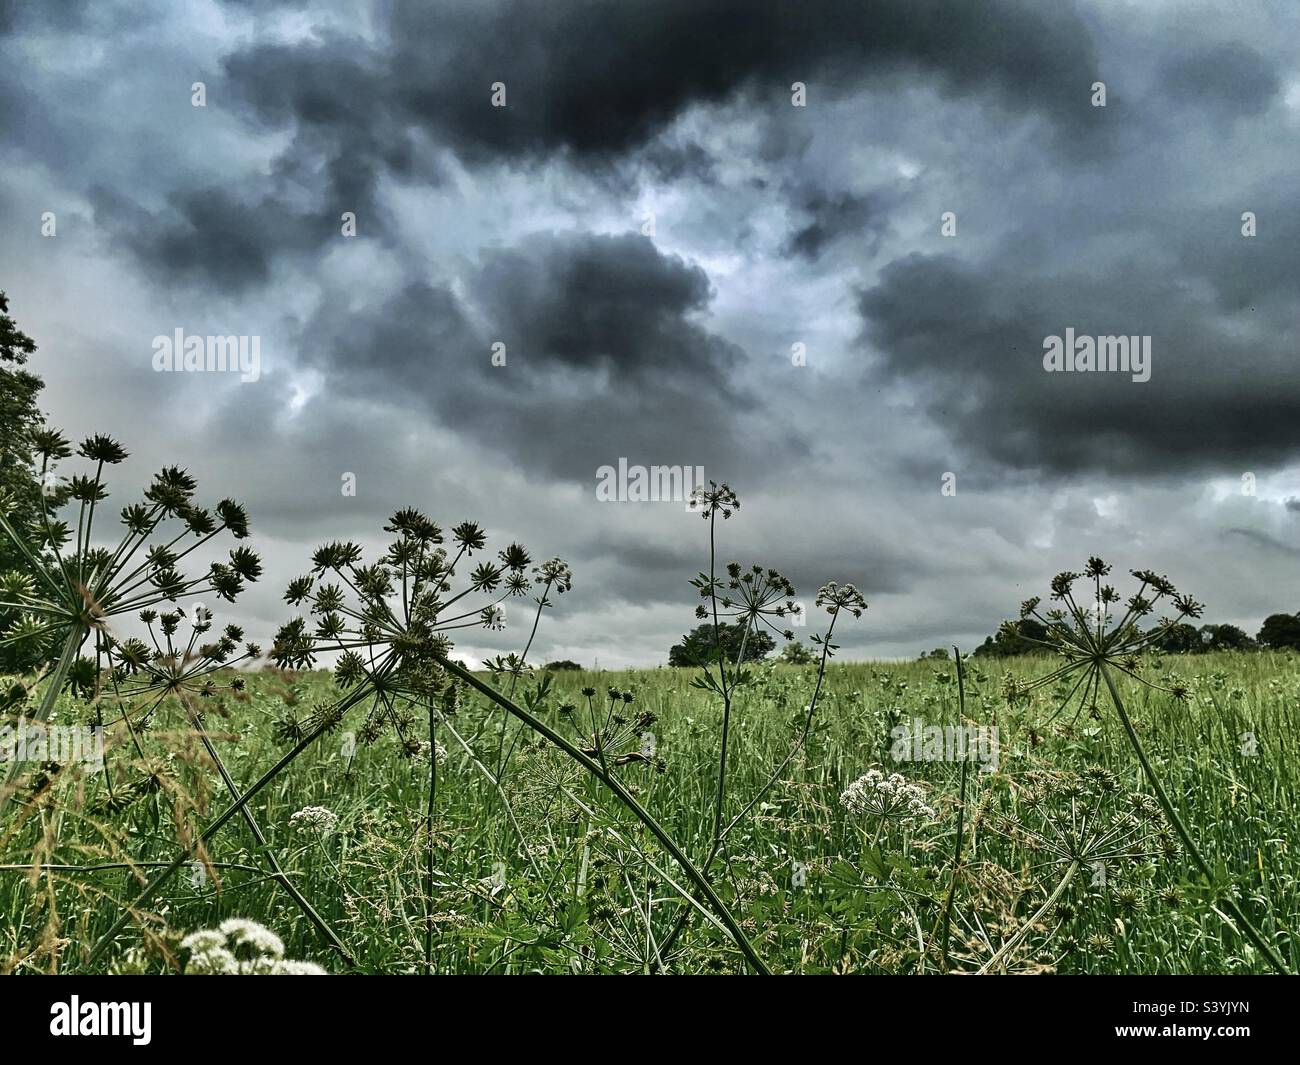 Minaccioso oscuro e minaccioso nuvole drammatiche e intimidatorie si radunano su un campo nel Somerset, il che significa una tempesta estiva Foto Stock